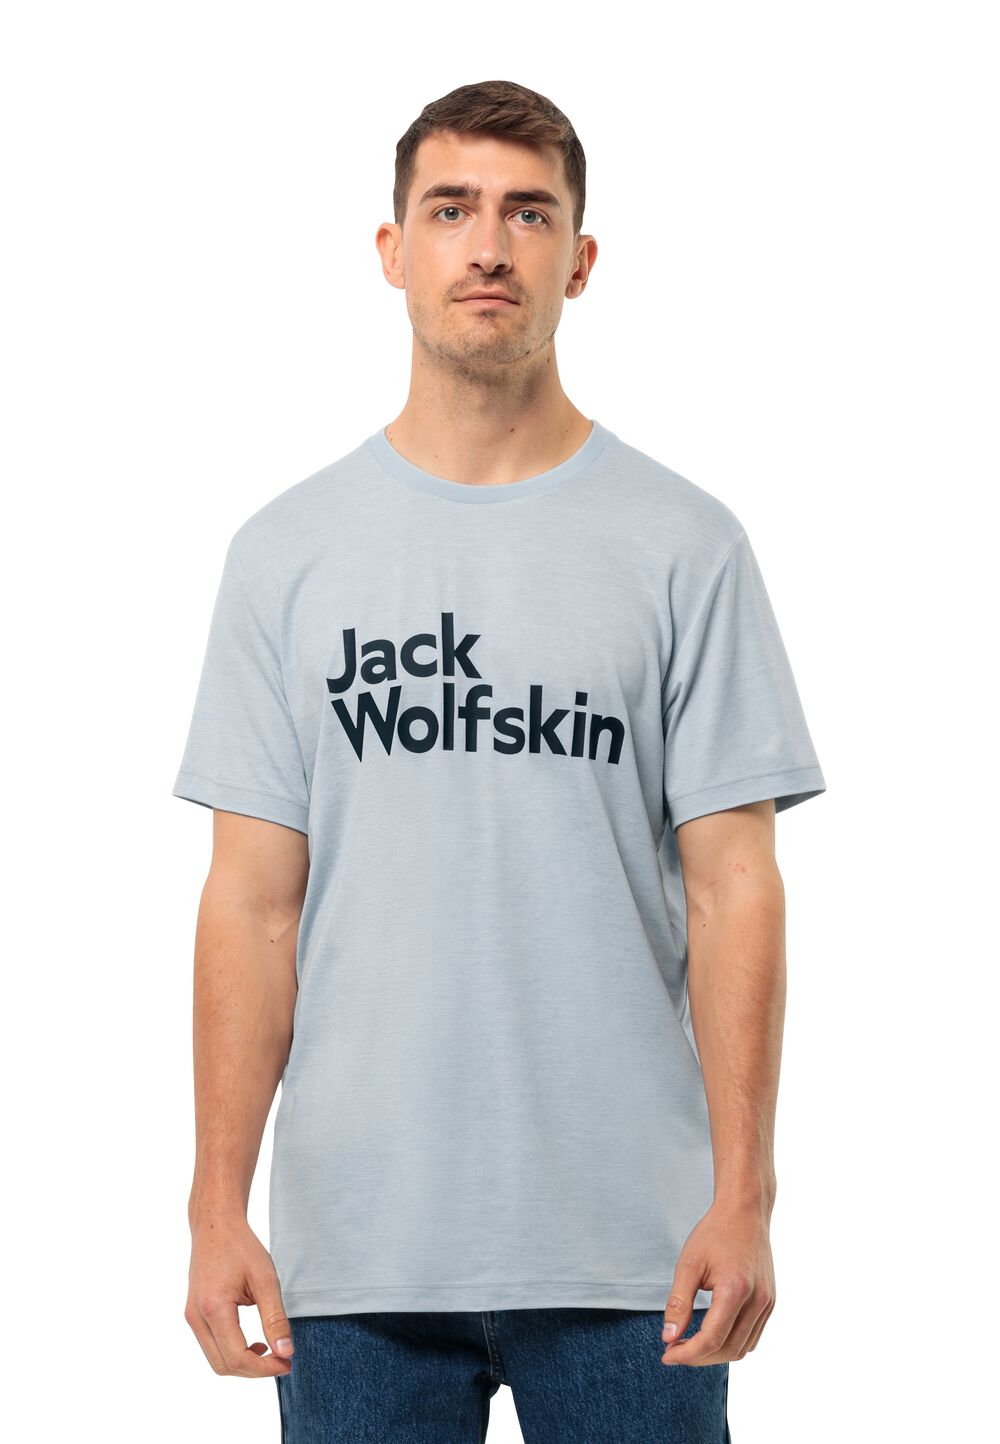 Jack Wolfskin Funktionsshirt Herren Brand T-Shirt Men XL soft blue soft blue von Jack Wolfskin